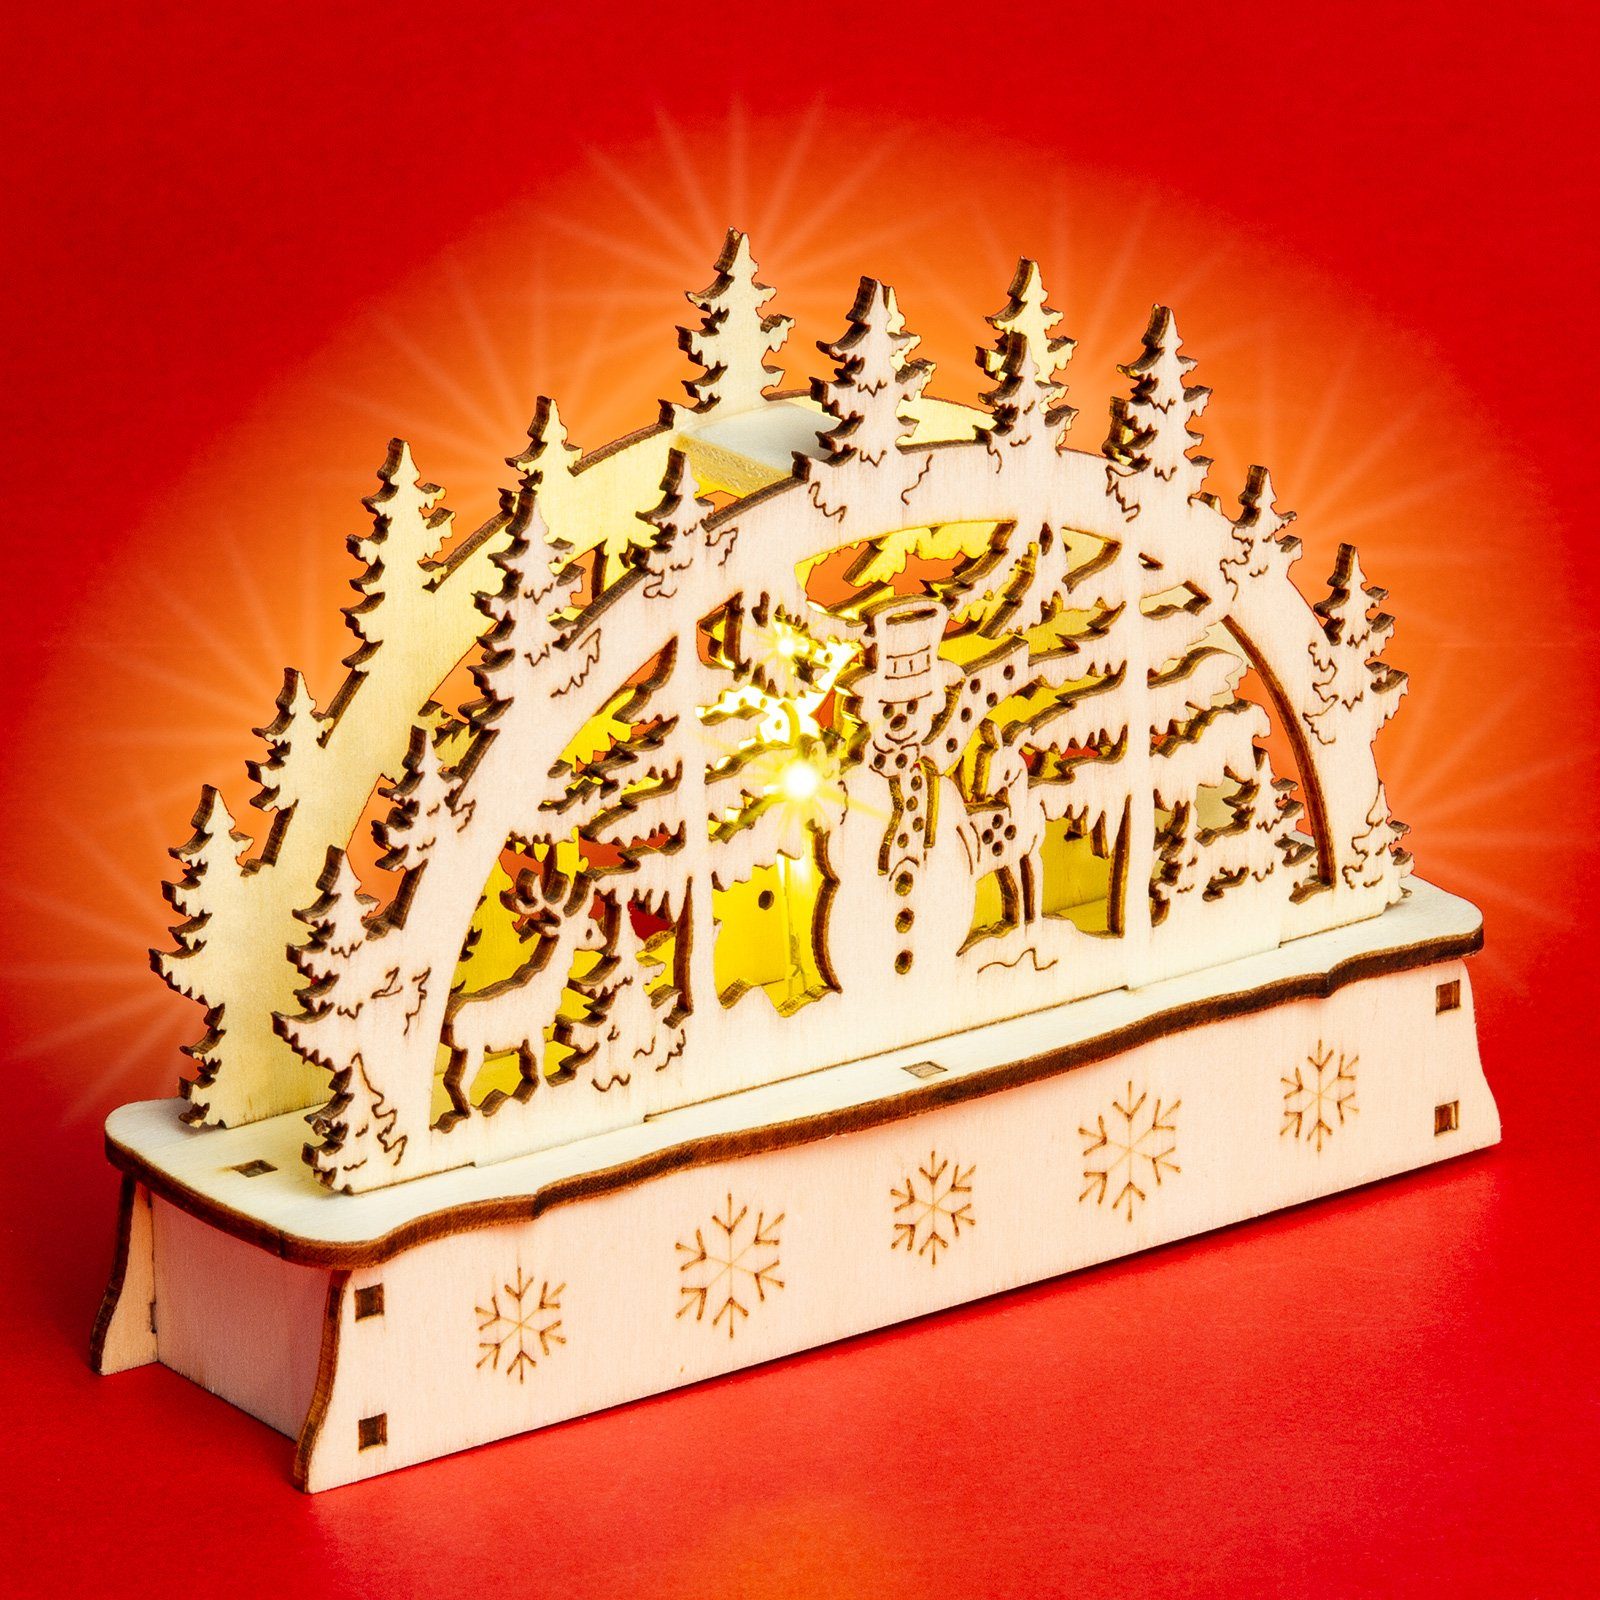 mit - Waldszene Schwibbogen viele Schneemann Motive Motiv SIKORA Holz mit Beleuchtung aus LB-MINI LED